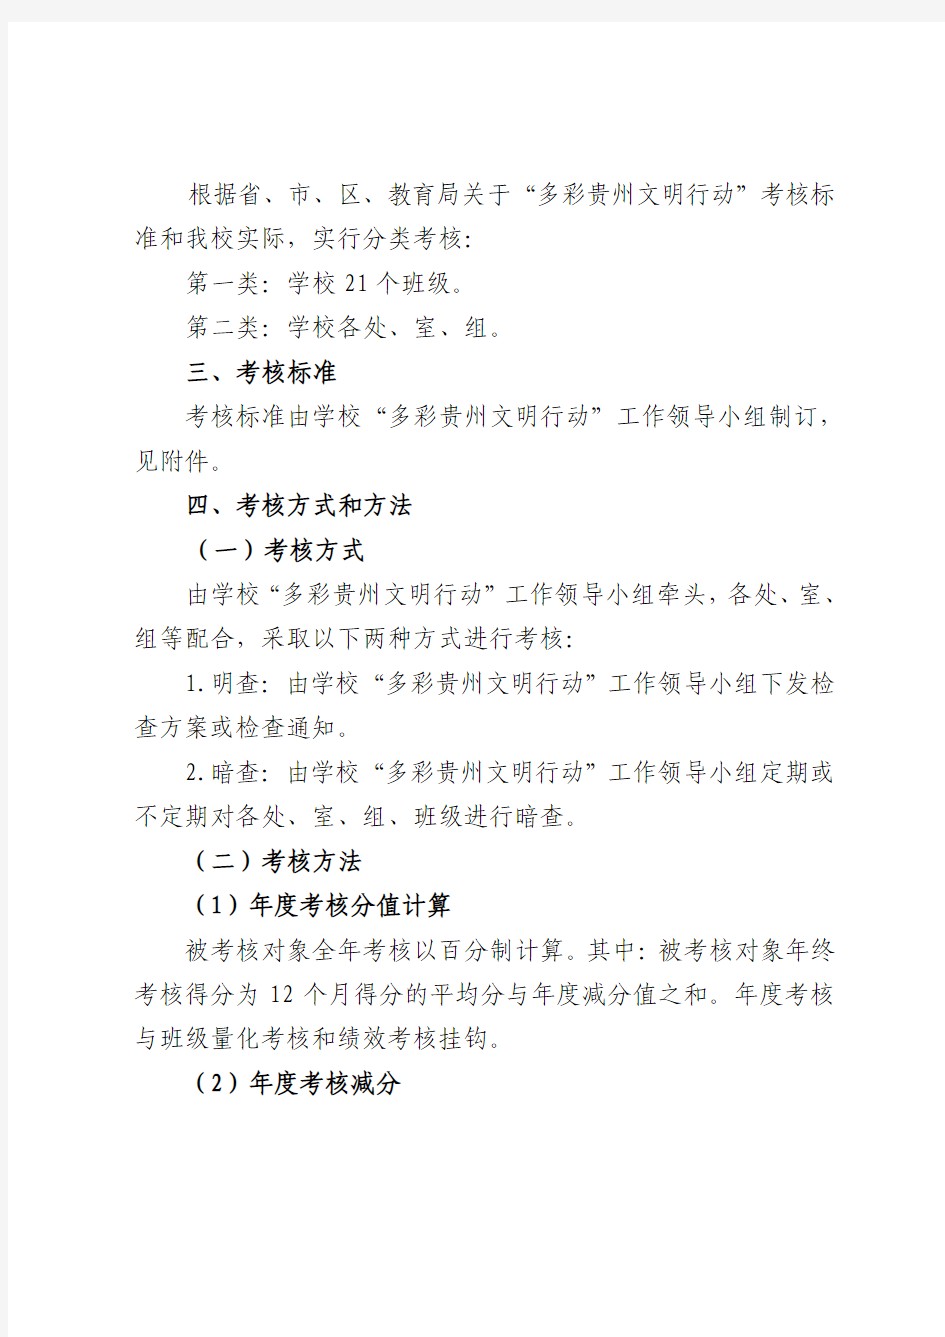 毕节三中2014年多彩贵州文明行动目标考核方案